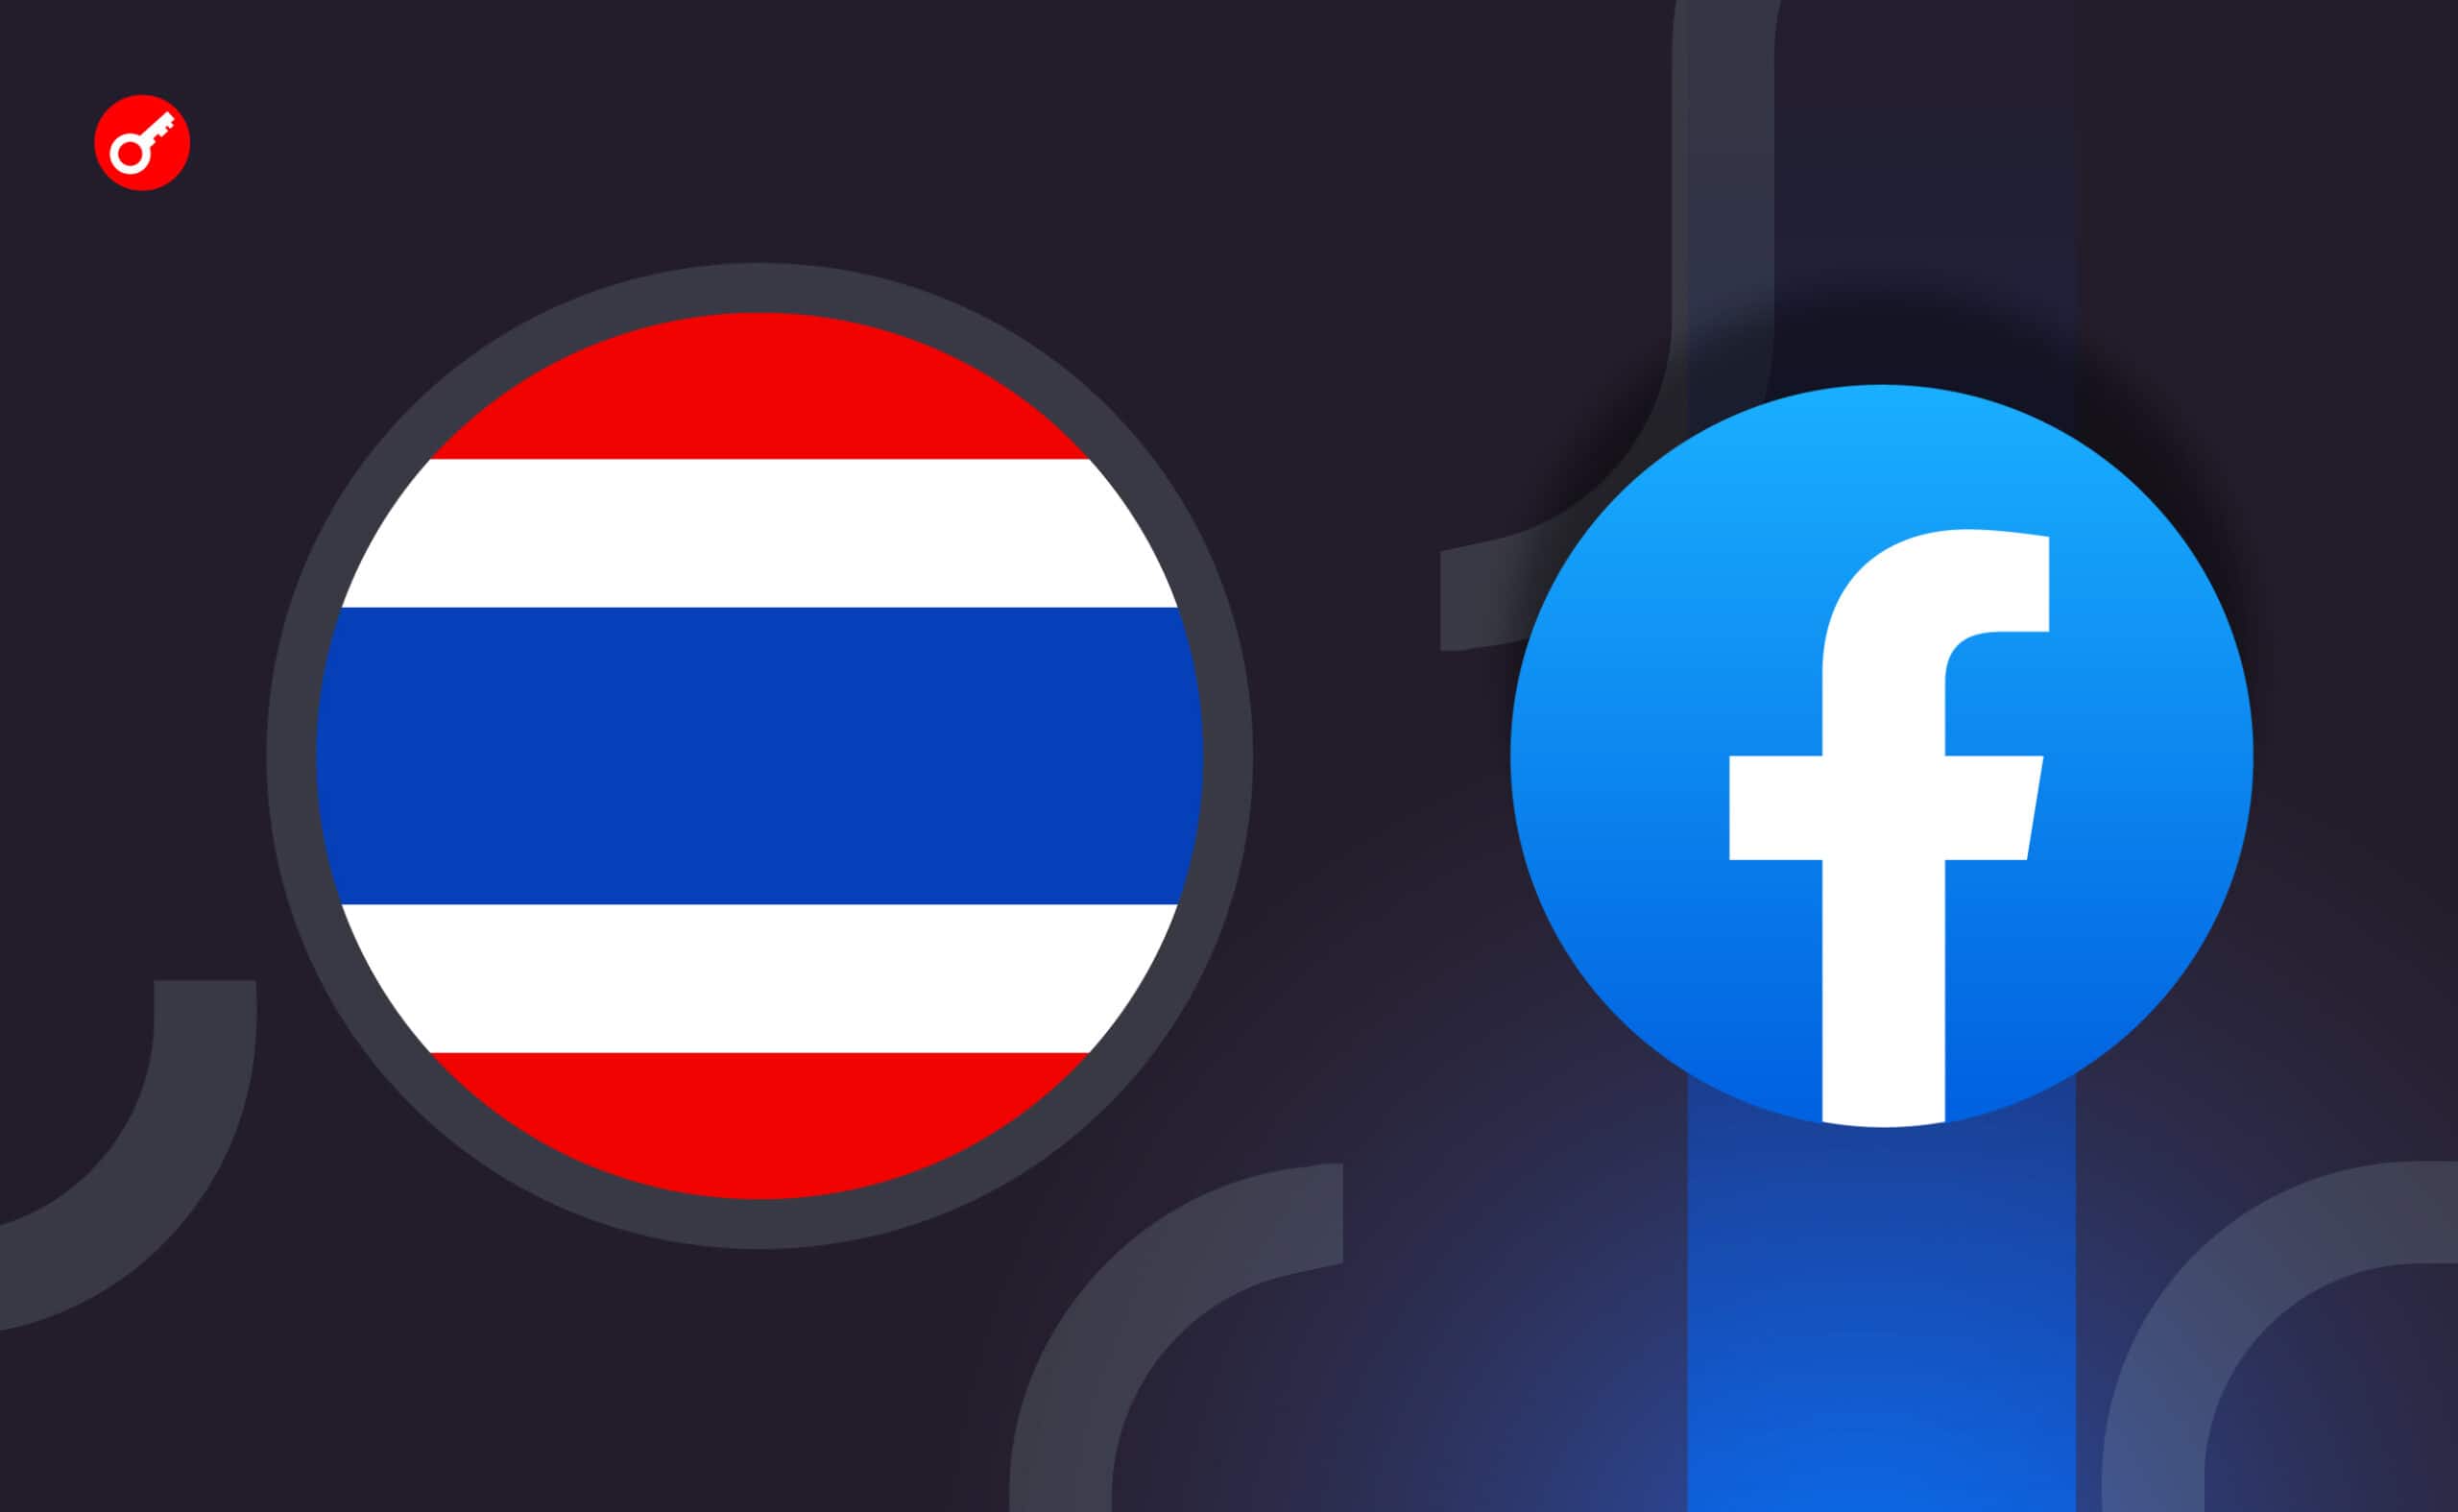 У Таїланді погрожують закрити Facebook до кінця місяця. Головний колаж новини.